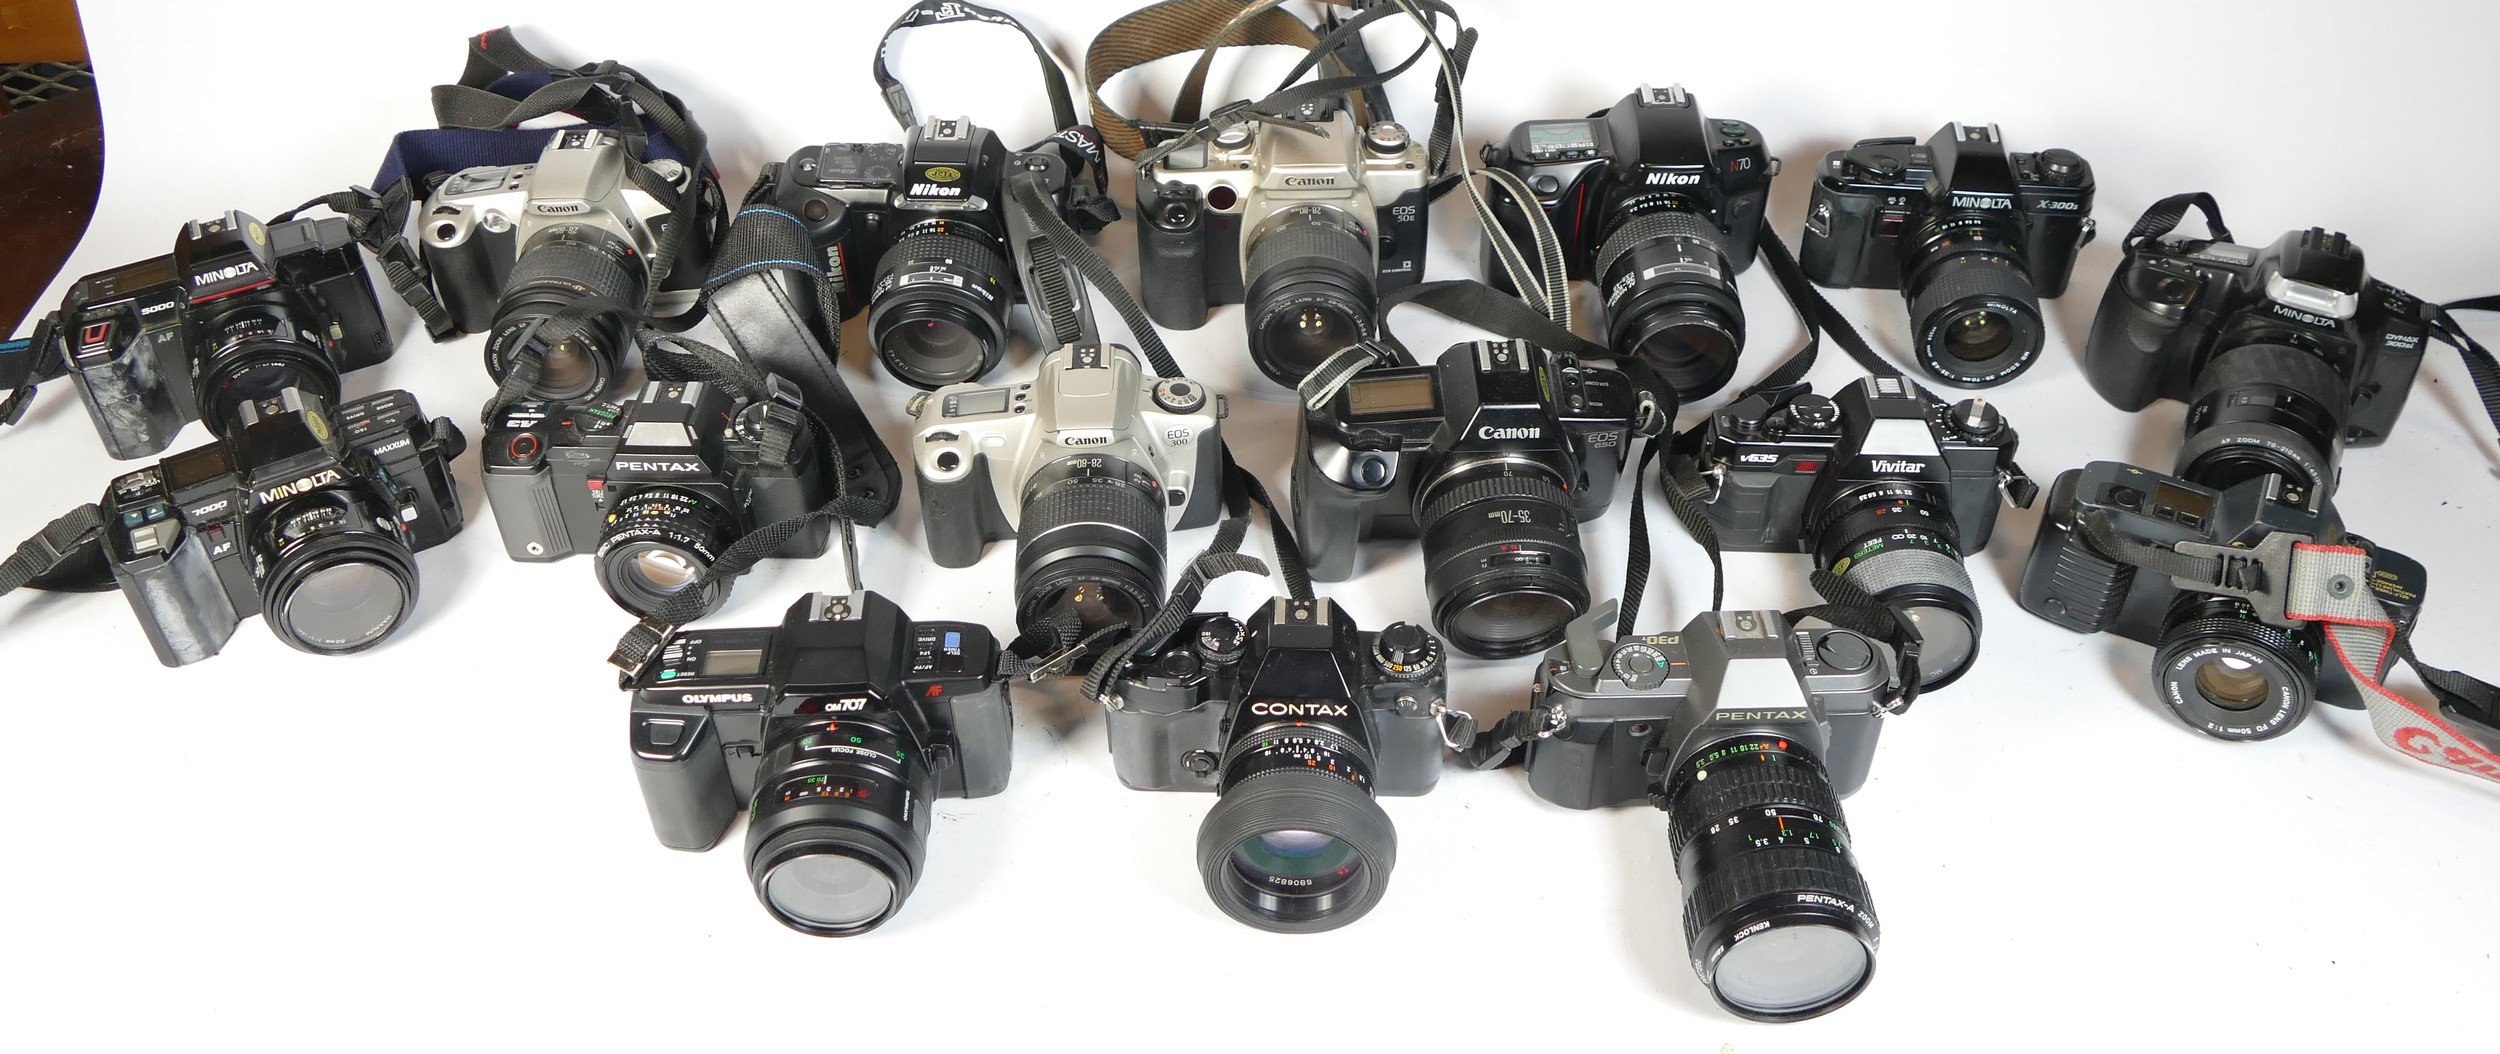 Twenty four SLR vintage film cameras to include a Minolta 5000, a Canon EOS 650, a Vivitar V635